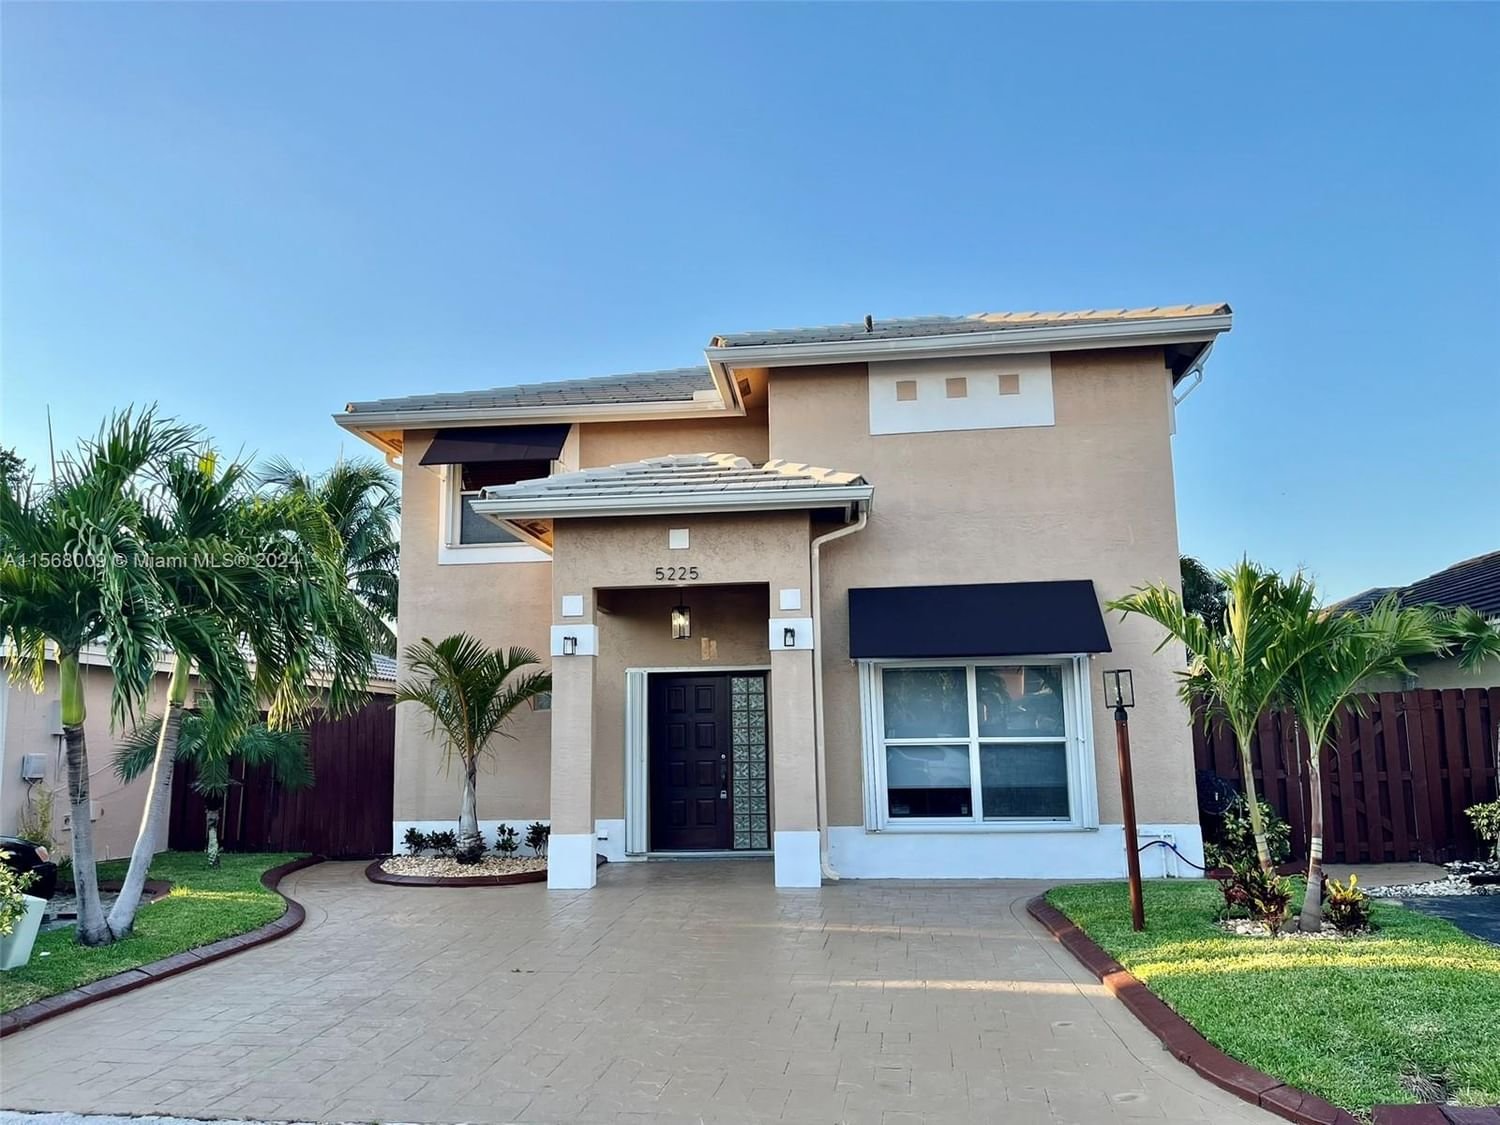 Real estate property located at 5225 187th Ln, Miami-Dade County, MONTERREY 4TH ADDN, Miami Gardens, FL